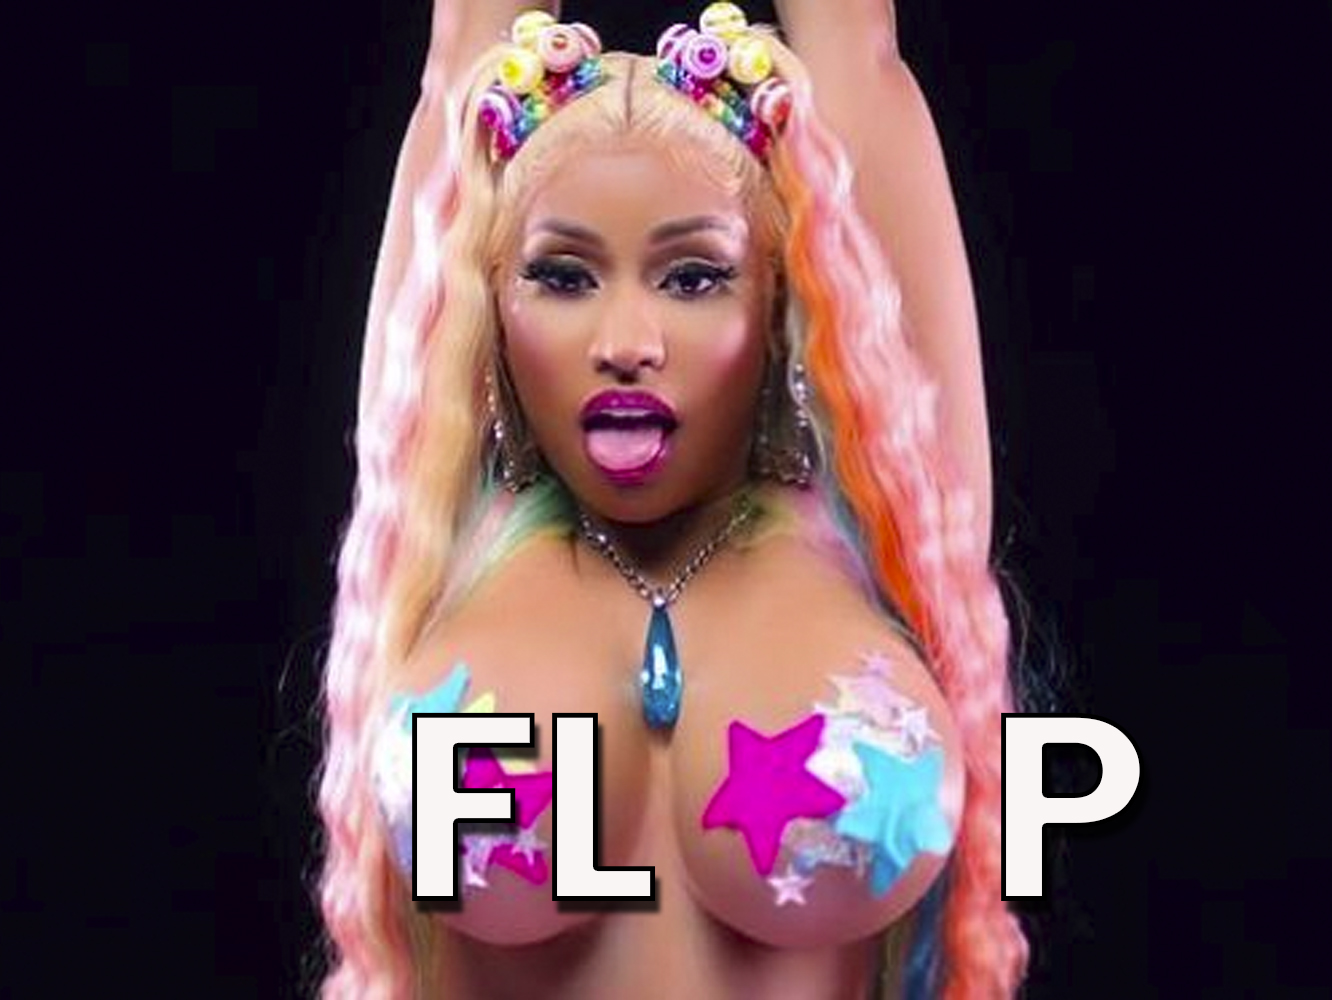  Nicki Minaj y Ped6fil9 hacen el ridículo con la mayor caída desde el #1 de la historia de Billboard